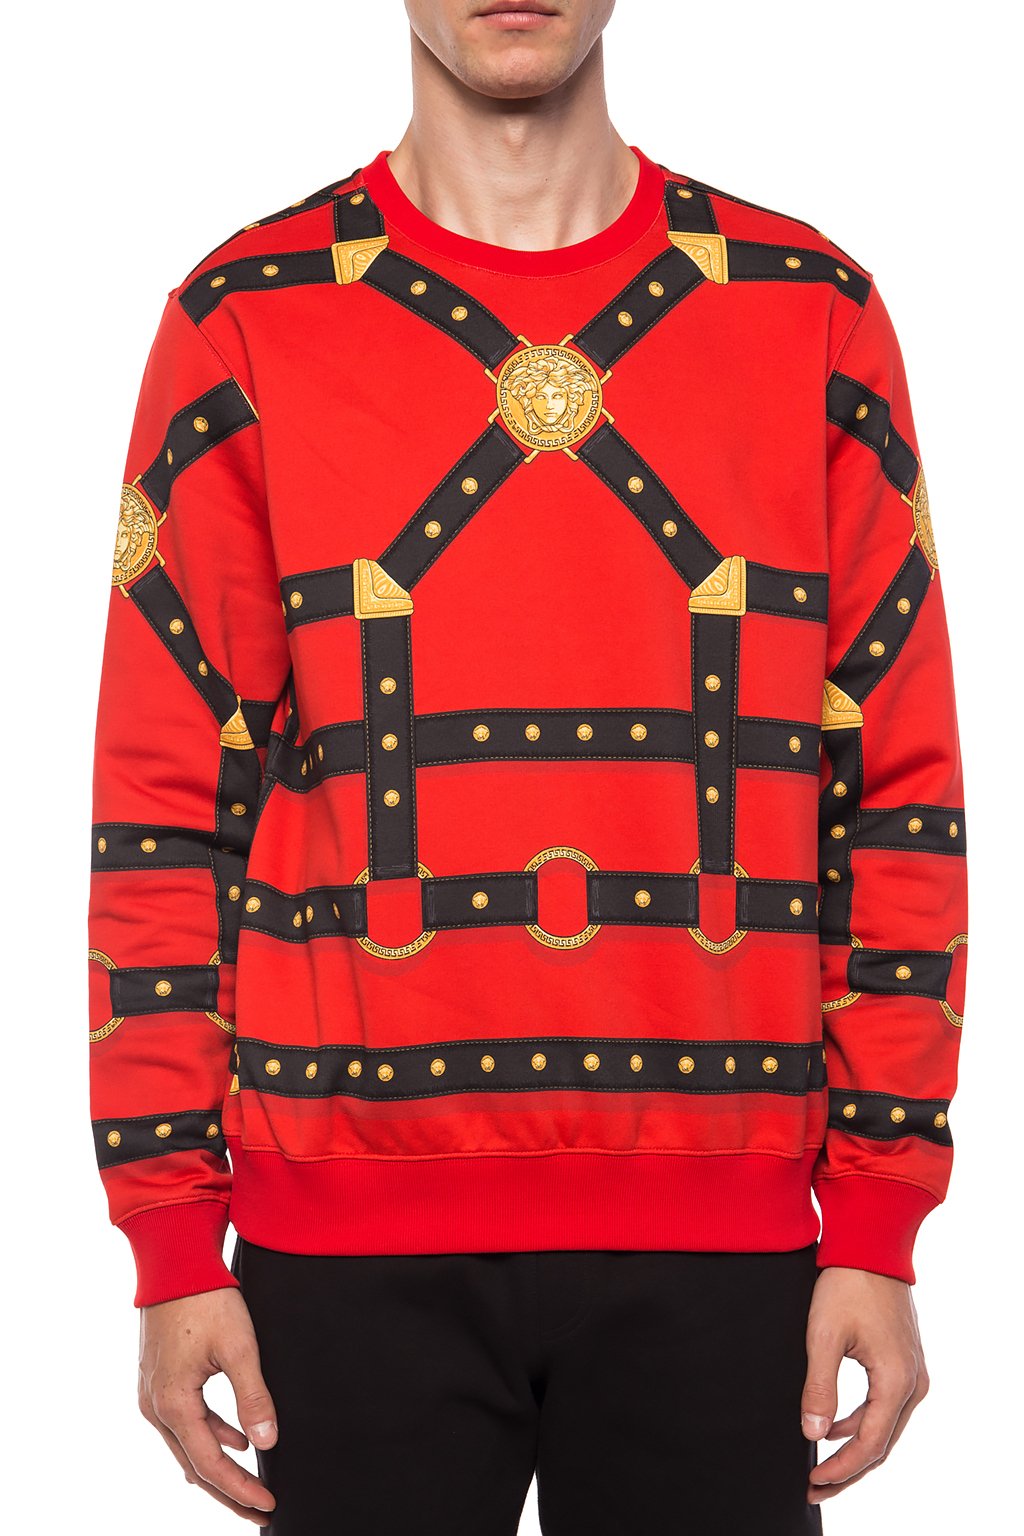 versace red sweatshirt